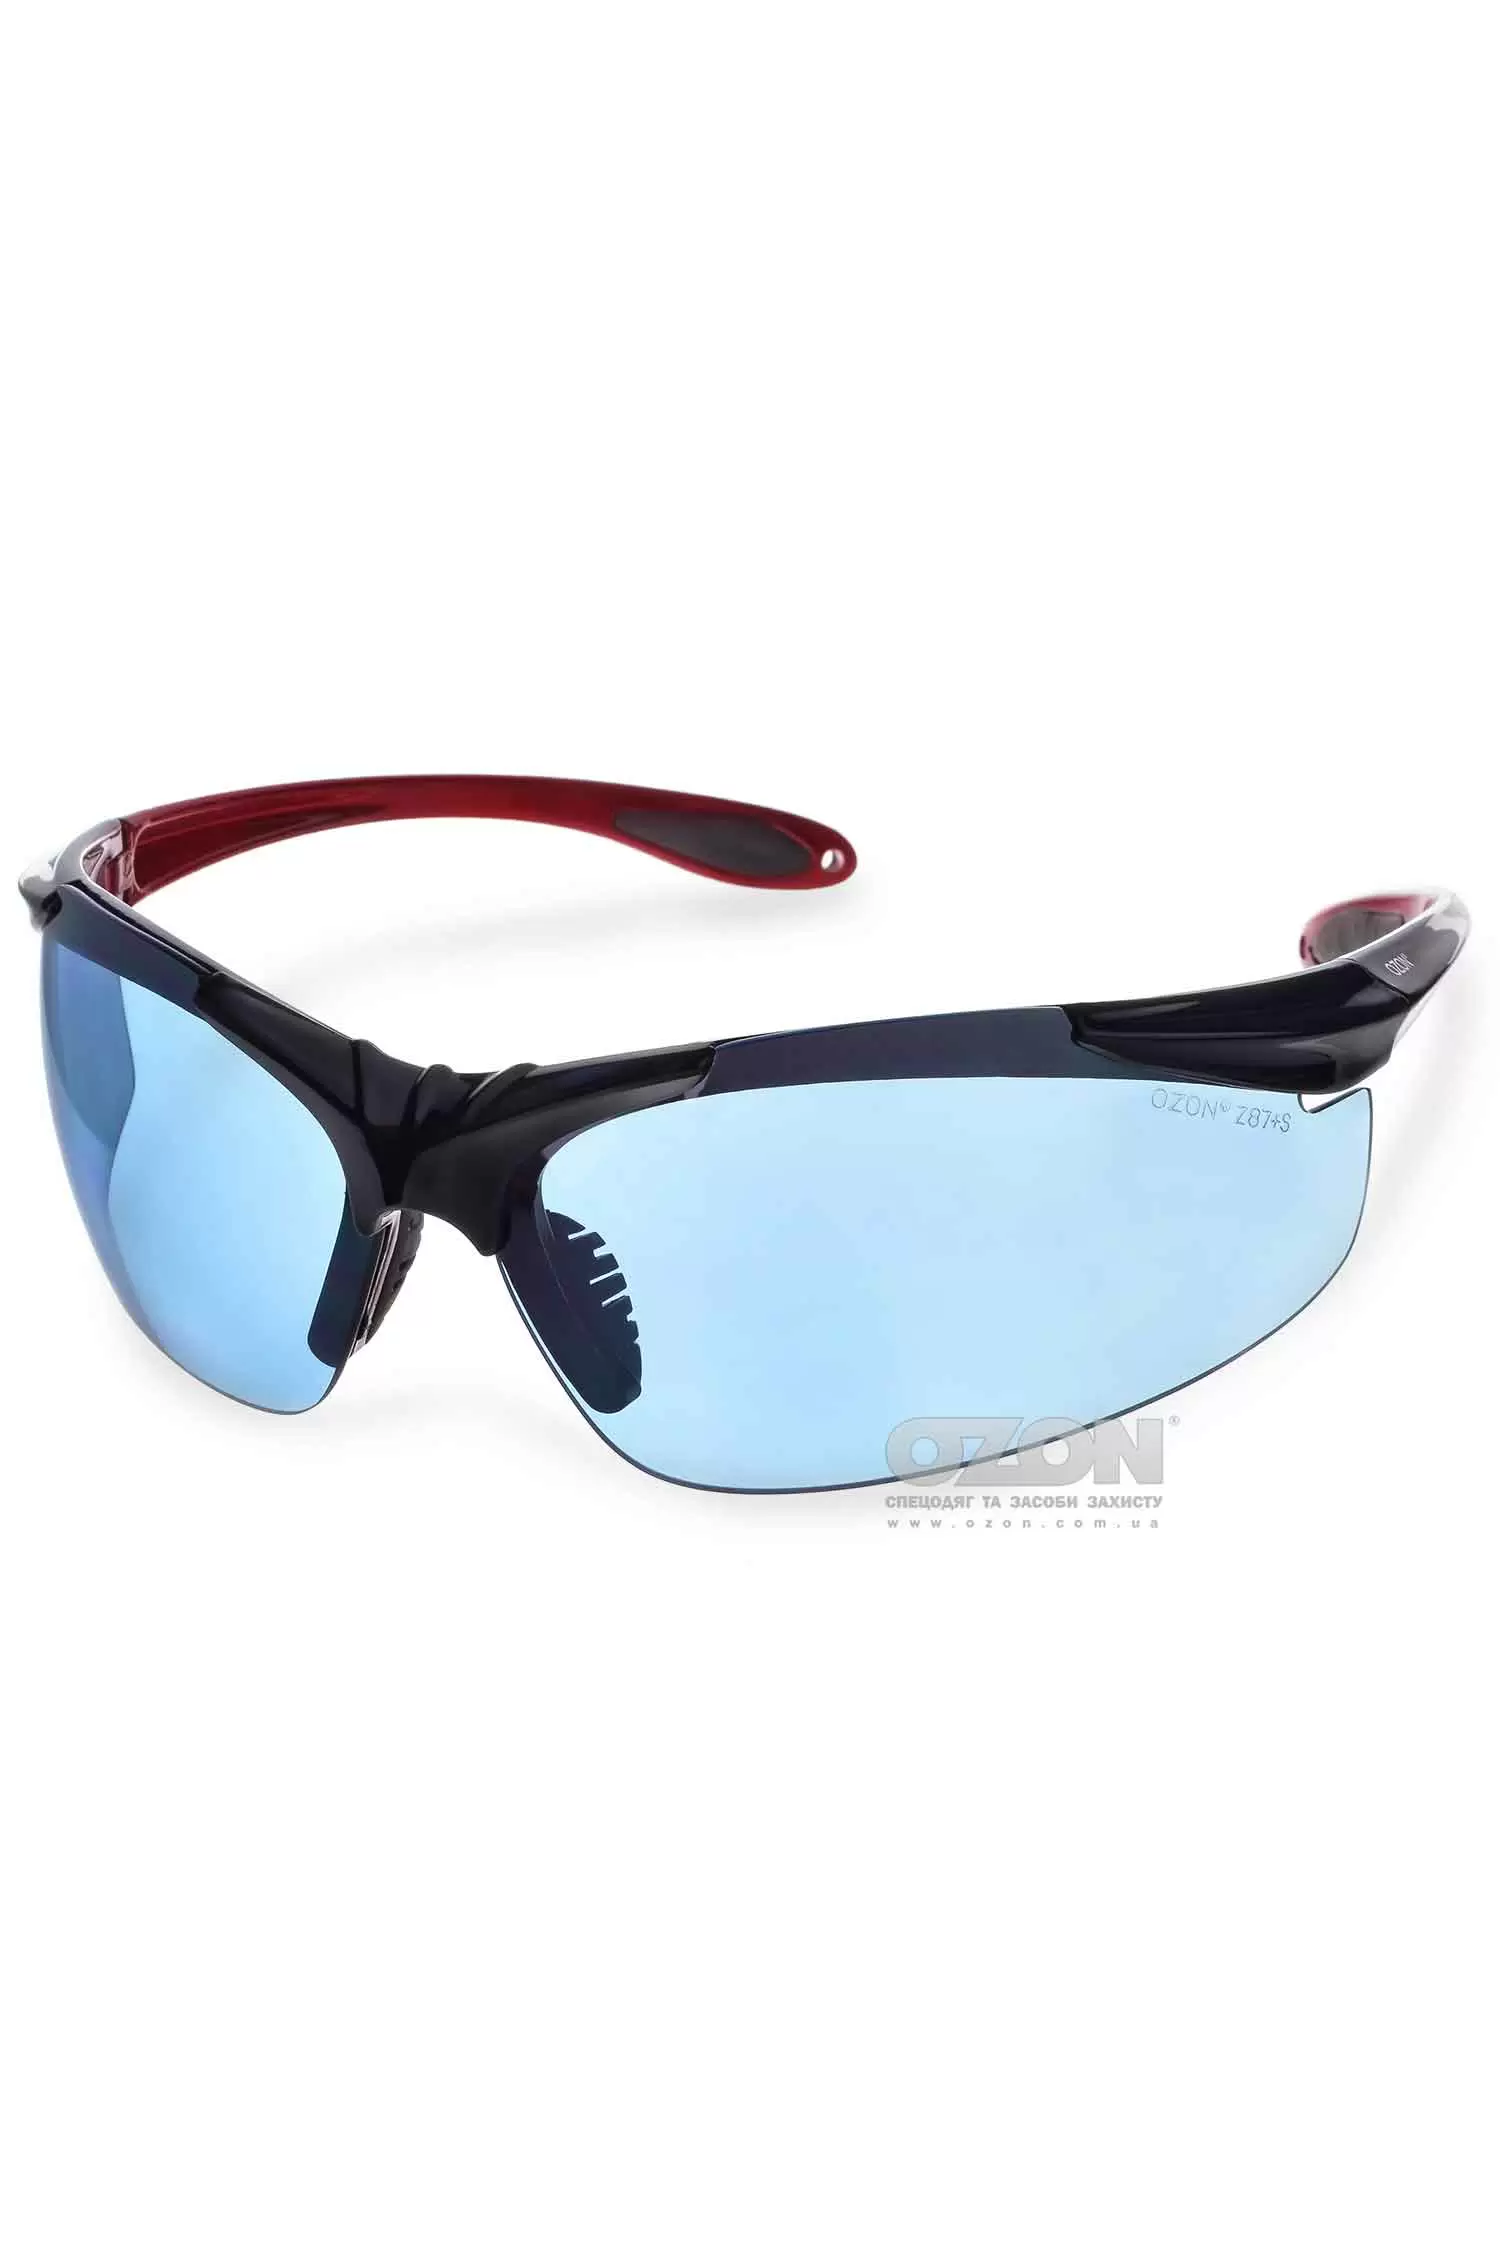 Защитные очки OZON™ 7-057, спортивные - Фото 1